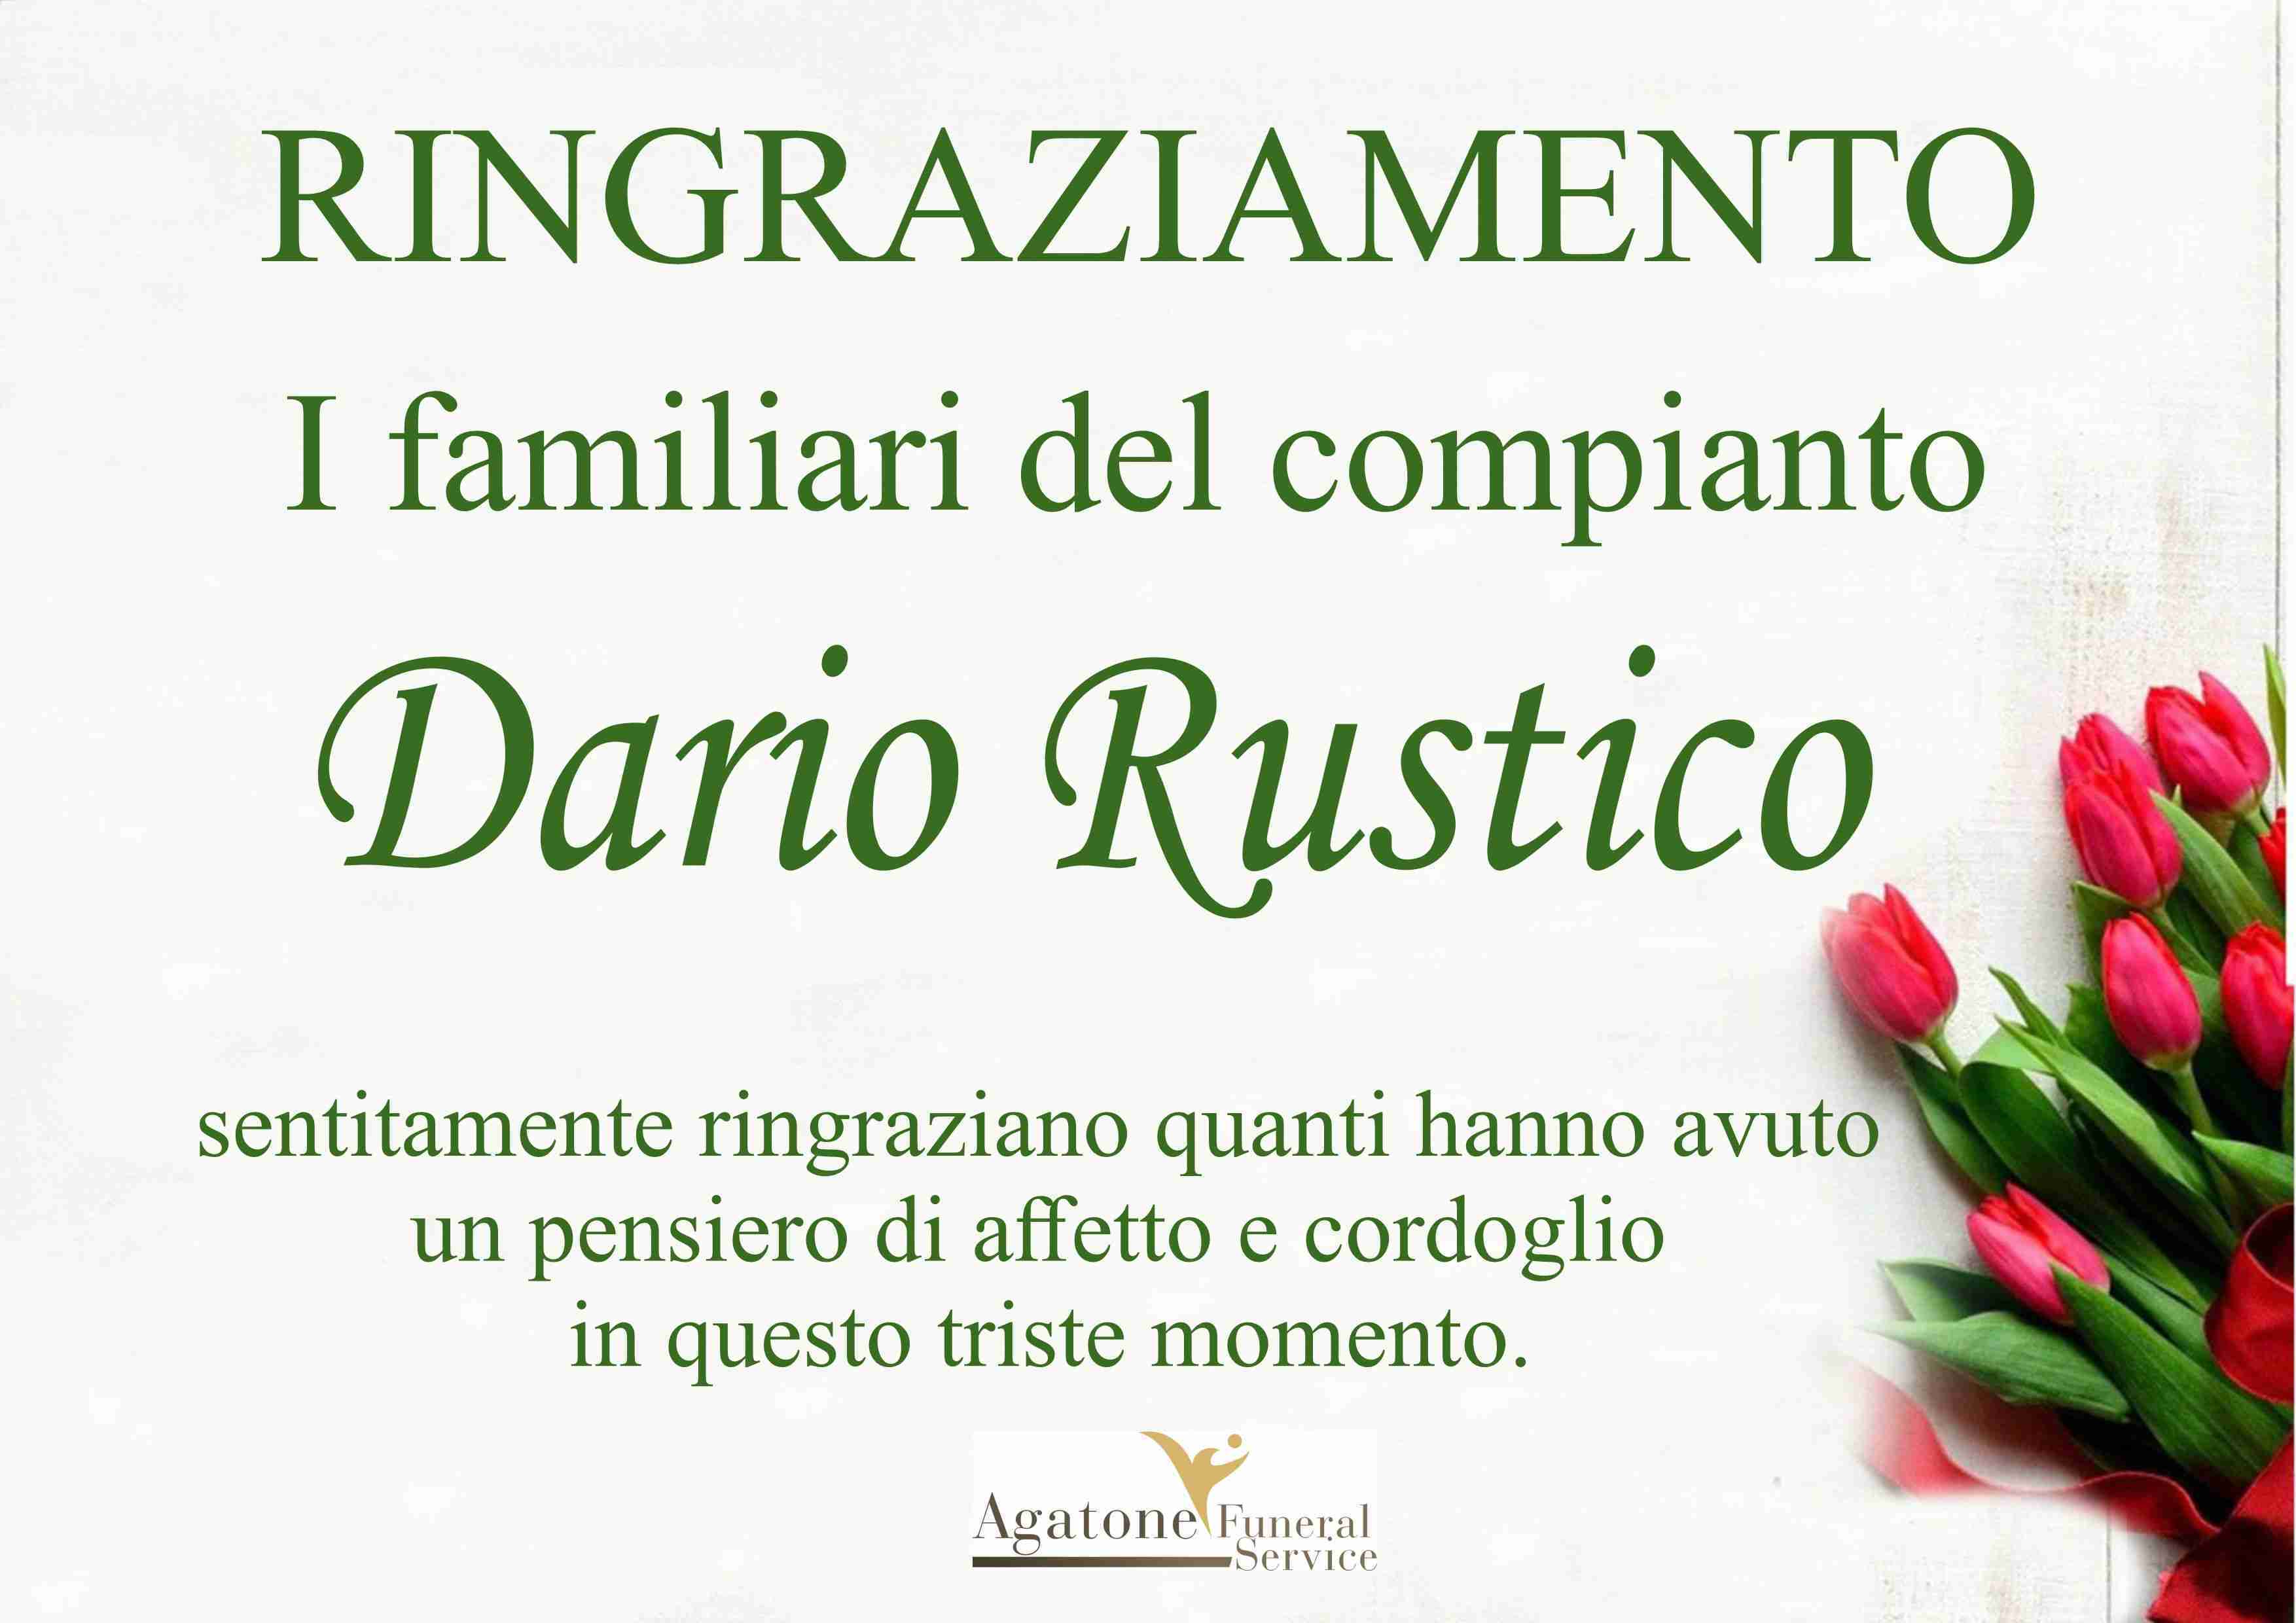 Dario Rustico